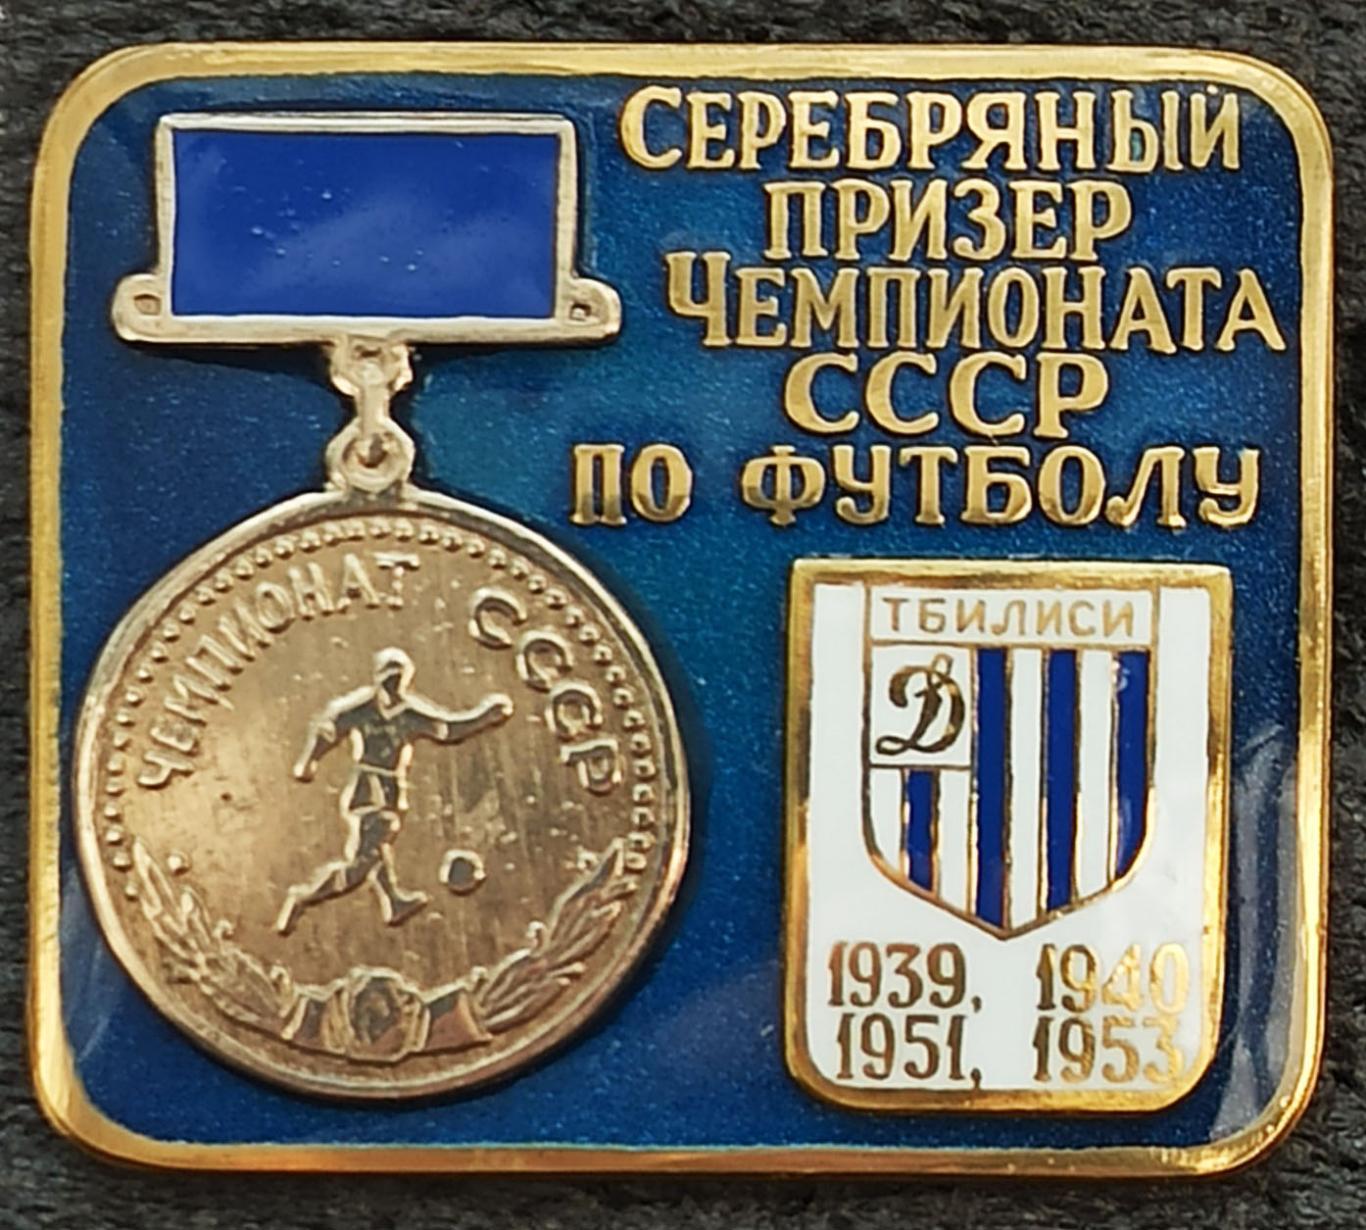 Значoк Знак ФК Динамо Тбилиси Грузия Серебряный призер СССР 1939 40 51 1953